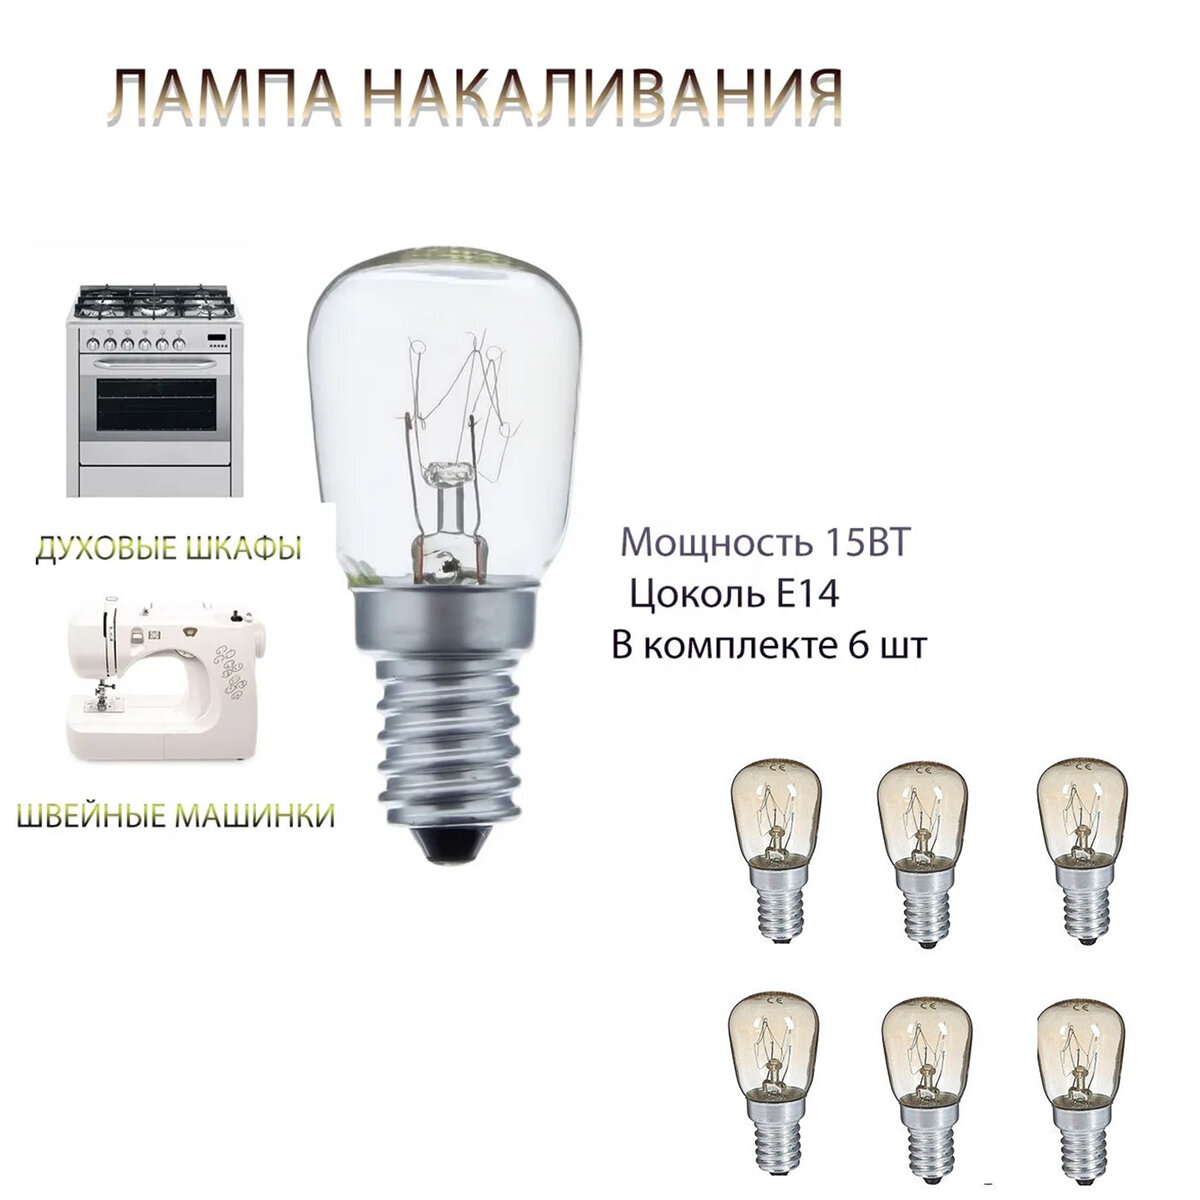 Лампочки для швейной машины 6 шт лампочки для духового шкафа (Е14 15 ВТ)